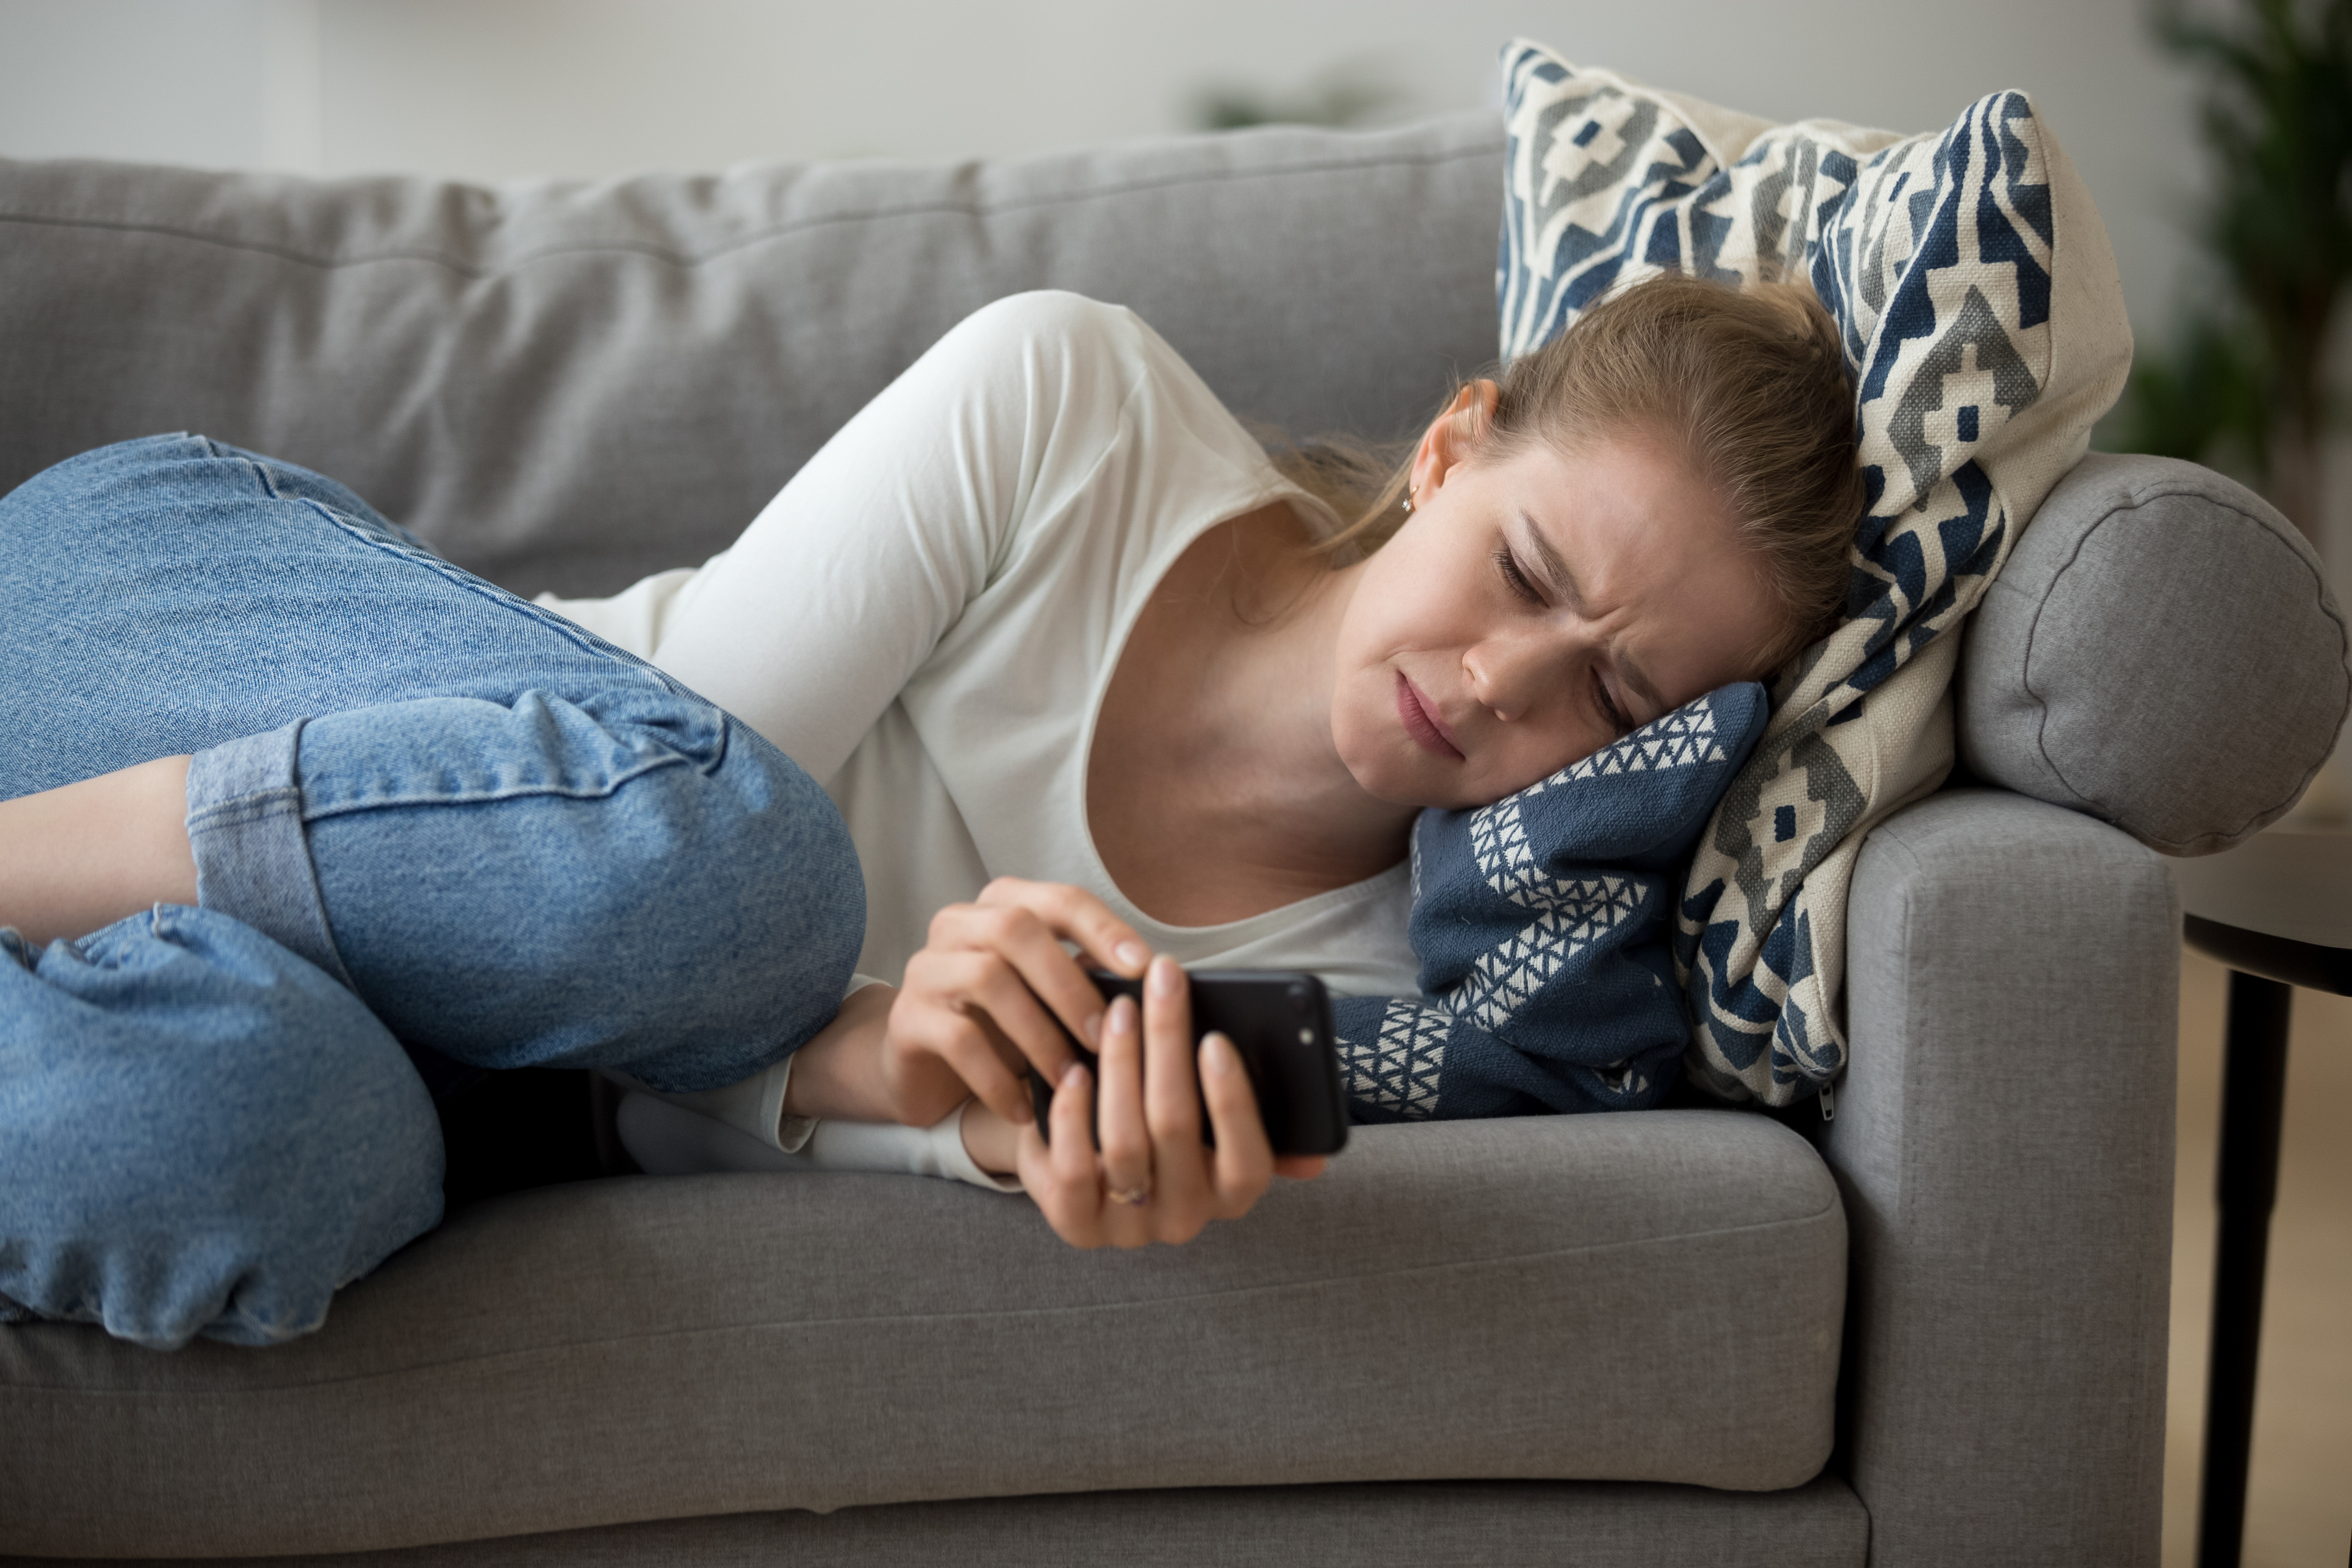 Une femme en pleurs allongée sur le canapé qui regarde son téléphone | Source : Shutterstock